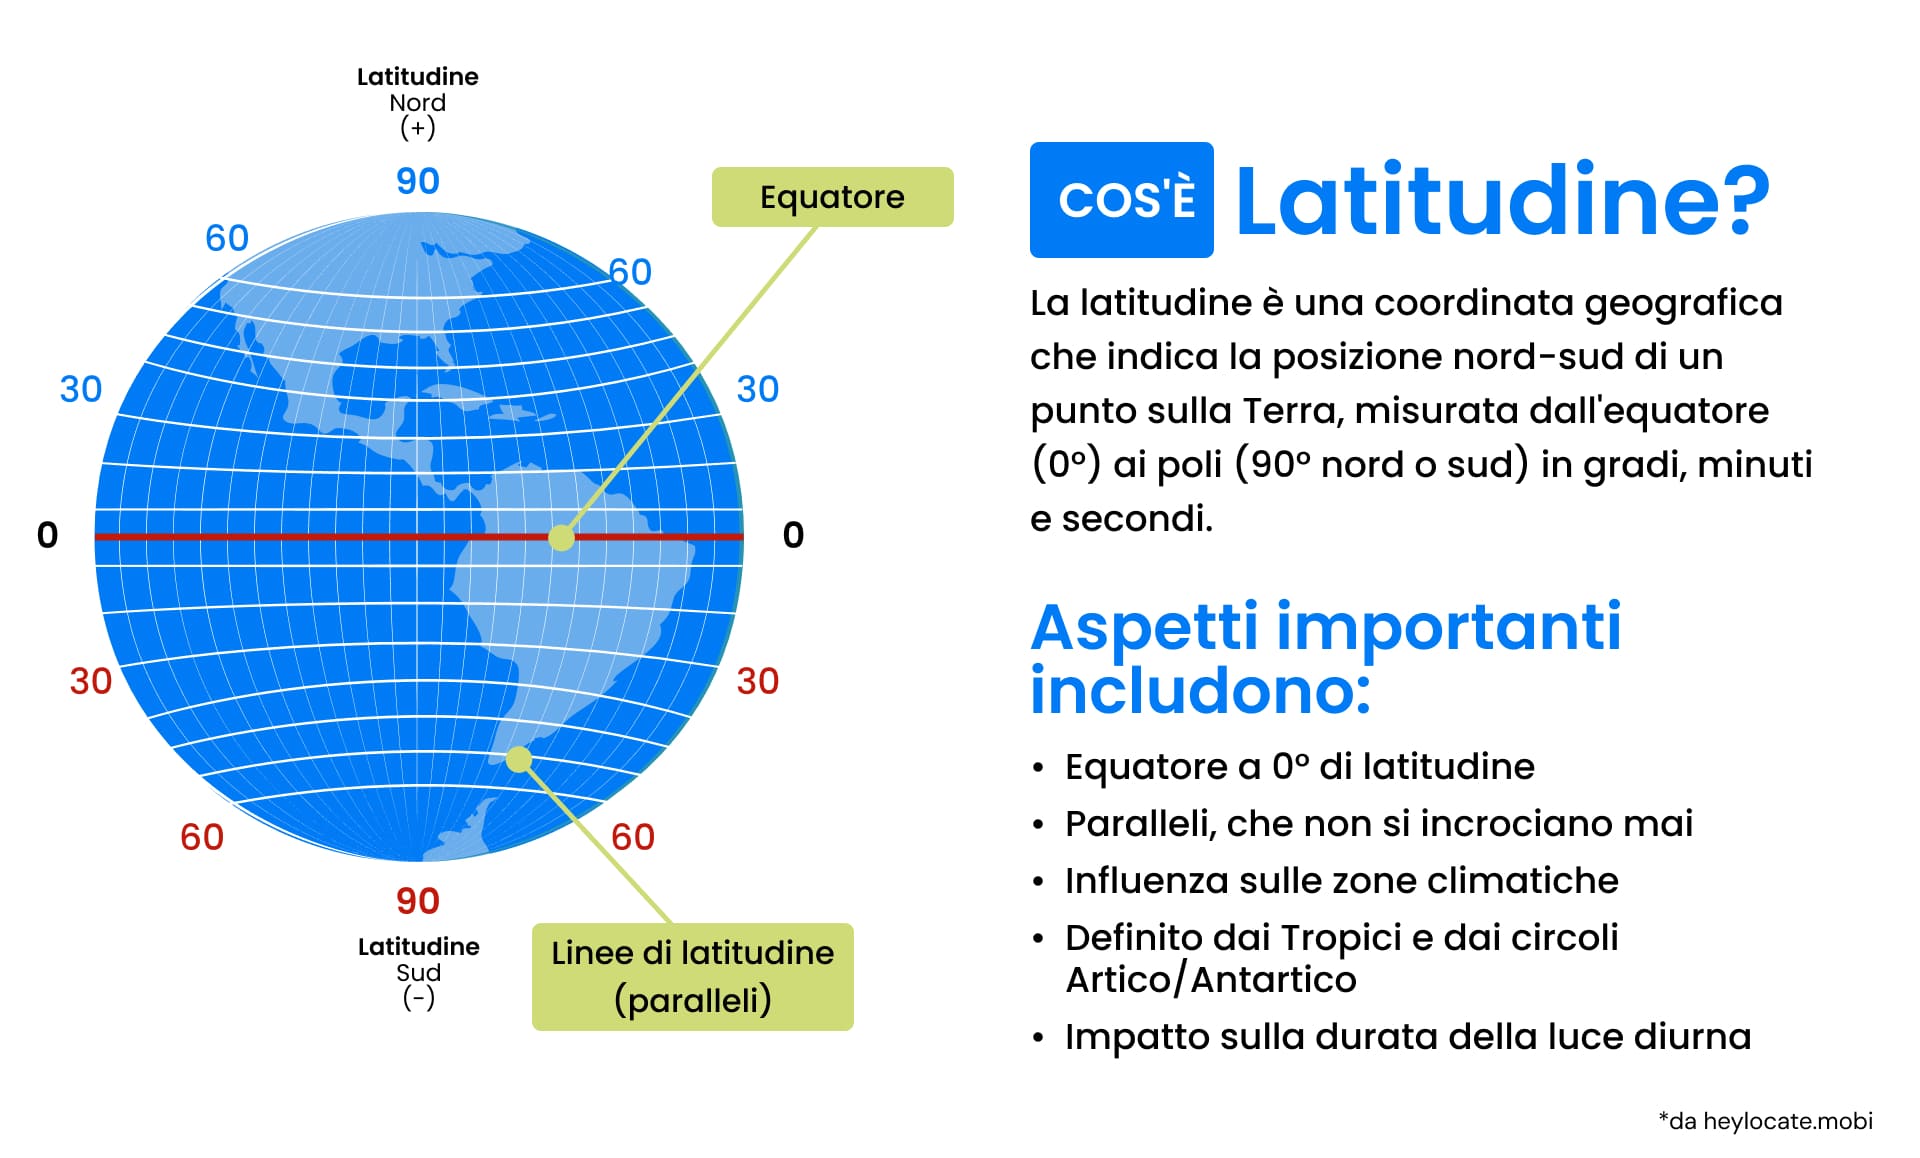 Latitudine: Una guida per capire le linee di latitudine della Terra: definizione, rappresentazione schematica del globo con la latitudine e aspetti chiave della latitudine